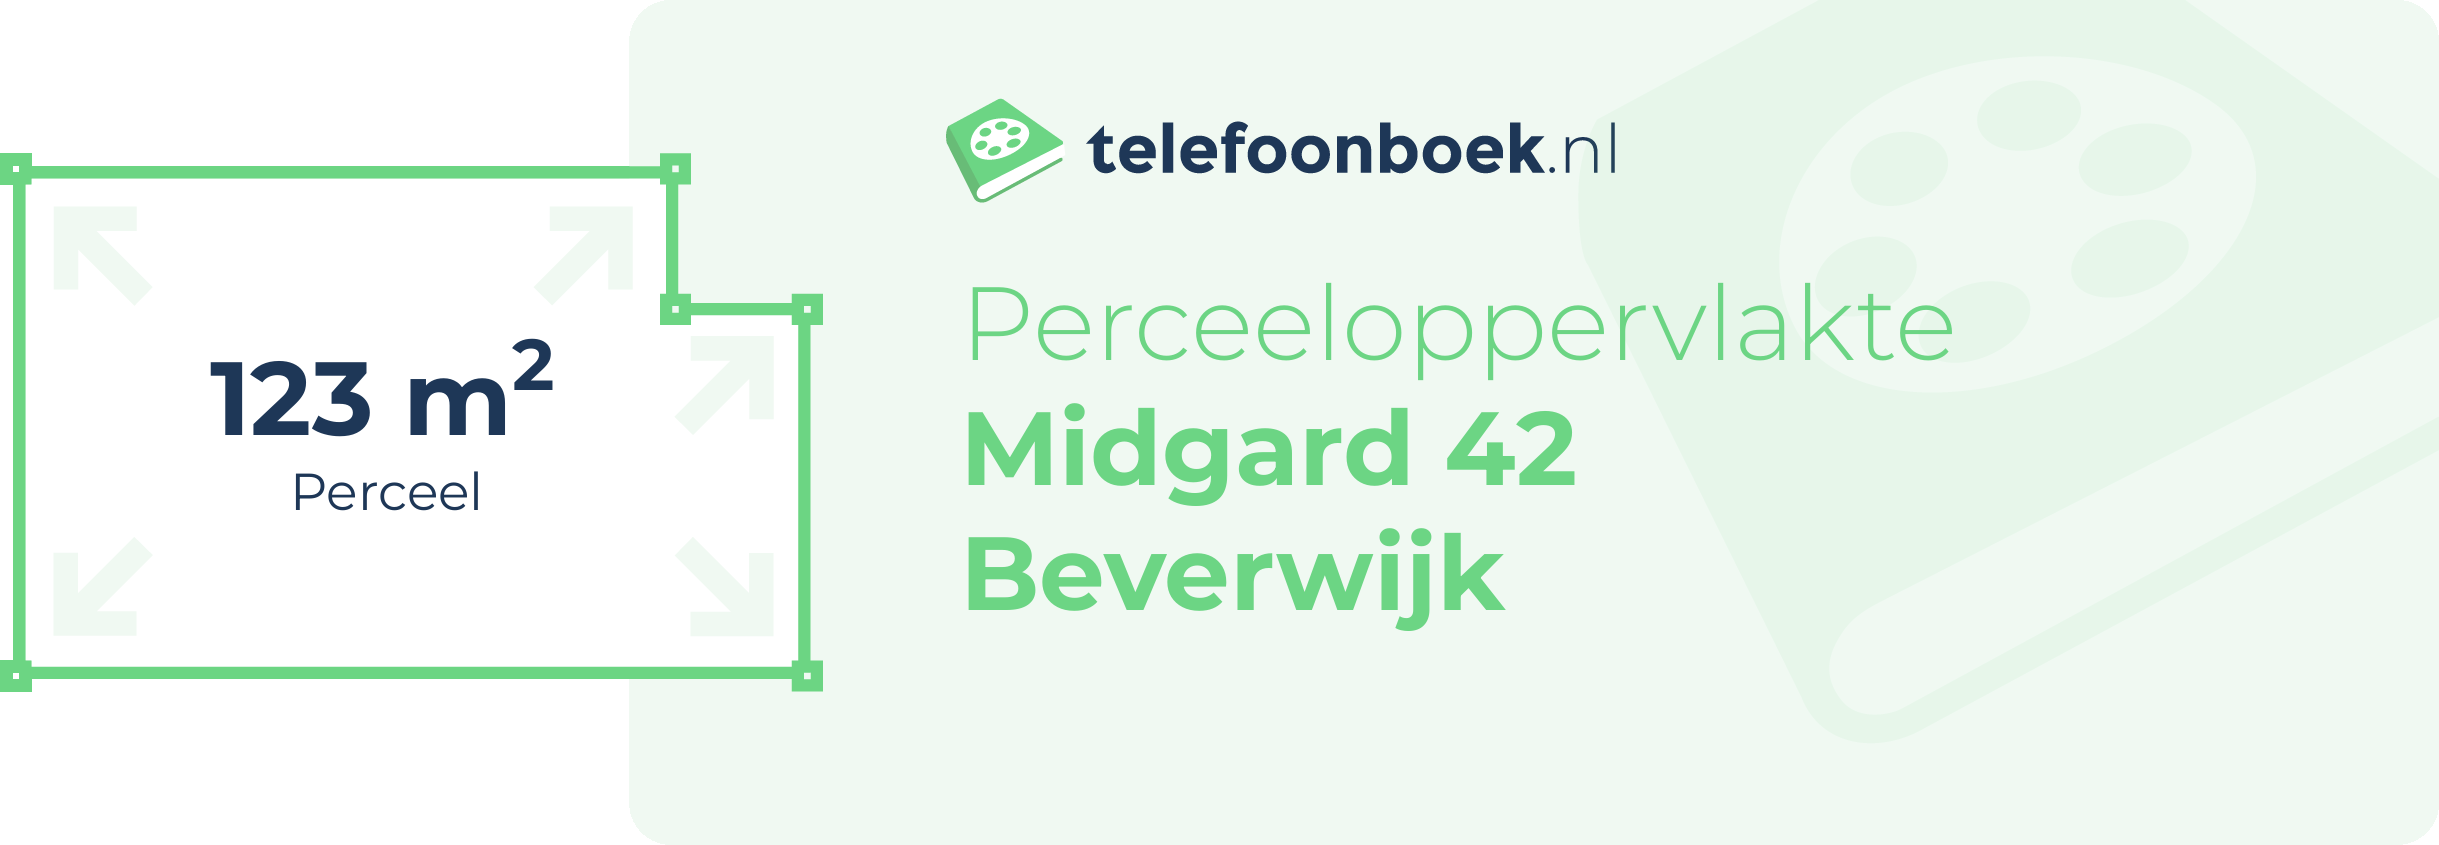 Perceeloppervlakte Midgard 42 Beverwijk